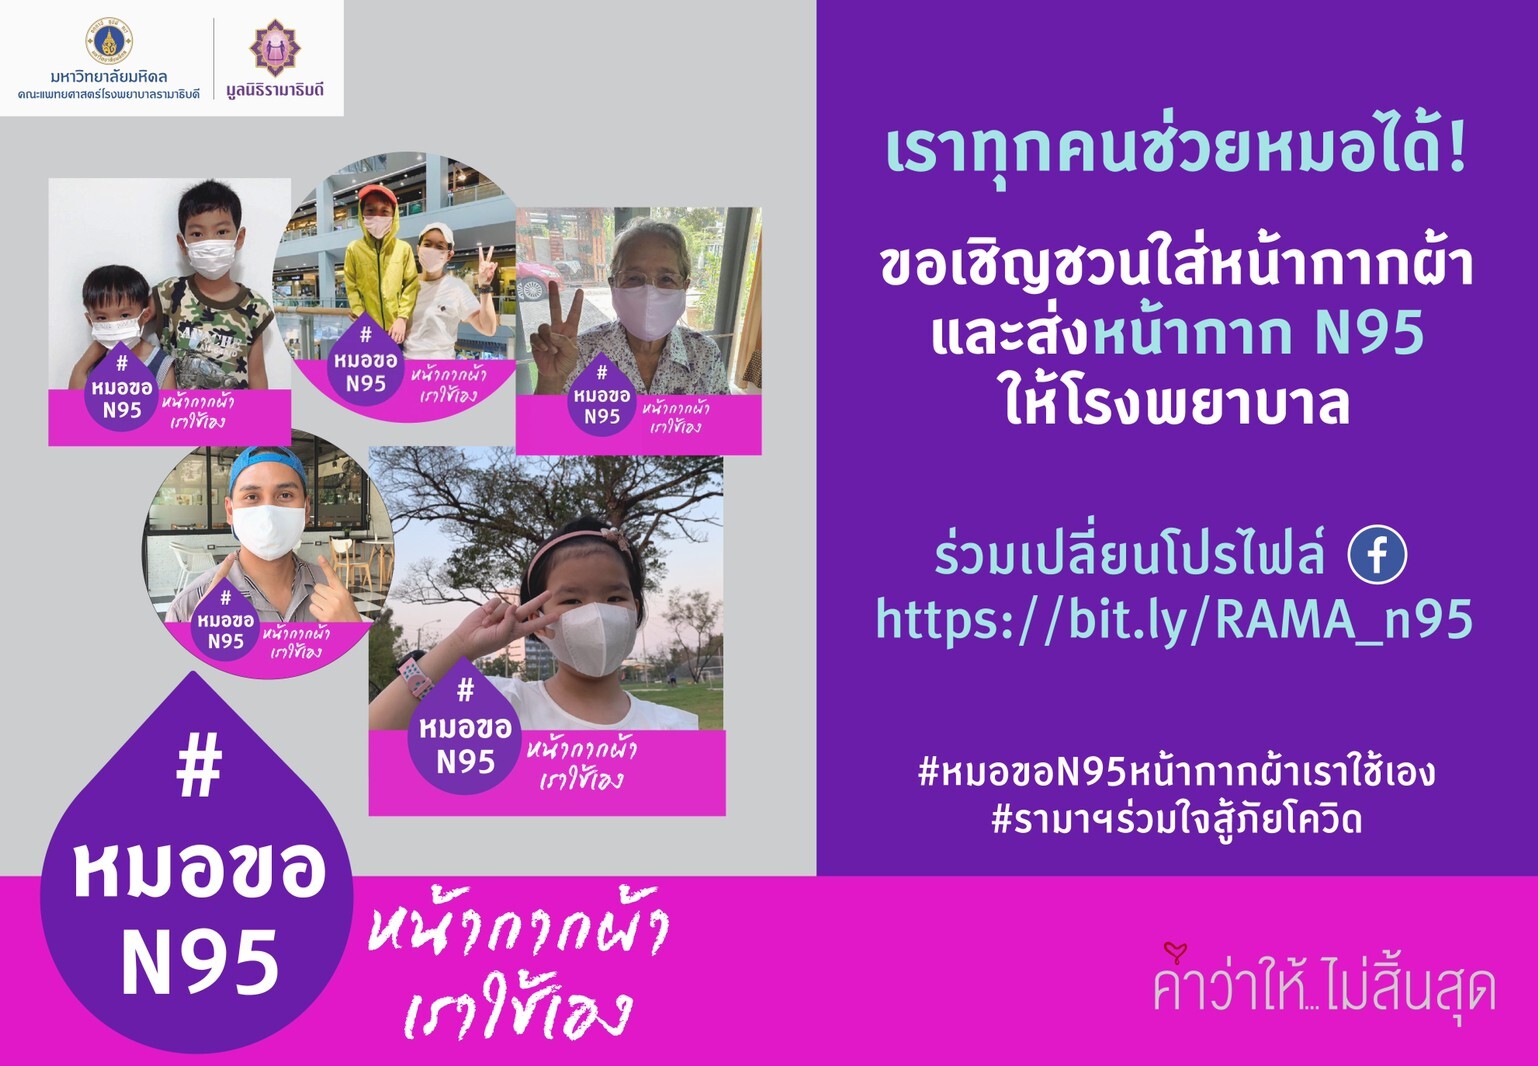 รามาธิบดี เปิดโครงการชวนคนไทยใช้หน้ากากผ้า บริจาคหน้ากาก N95 ให้หมอ พร้อมเชิญชวนคลิกเปลี่ยนรูปโปรไฟล์  กับโครงการ “#หมอขอN95หน้ากากผ้าเราใช้เอง”